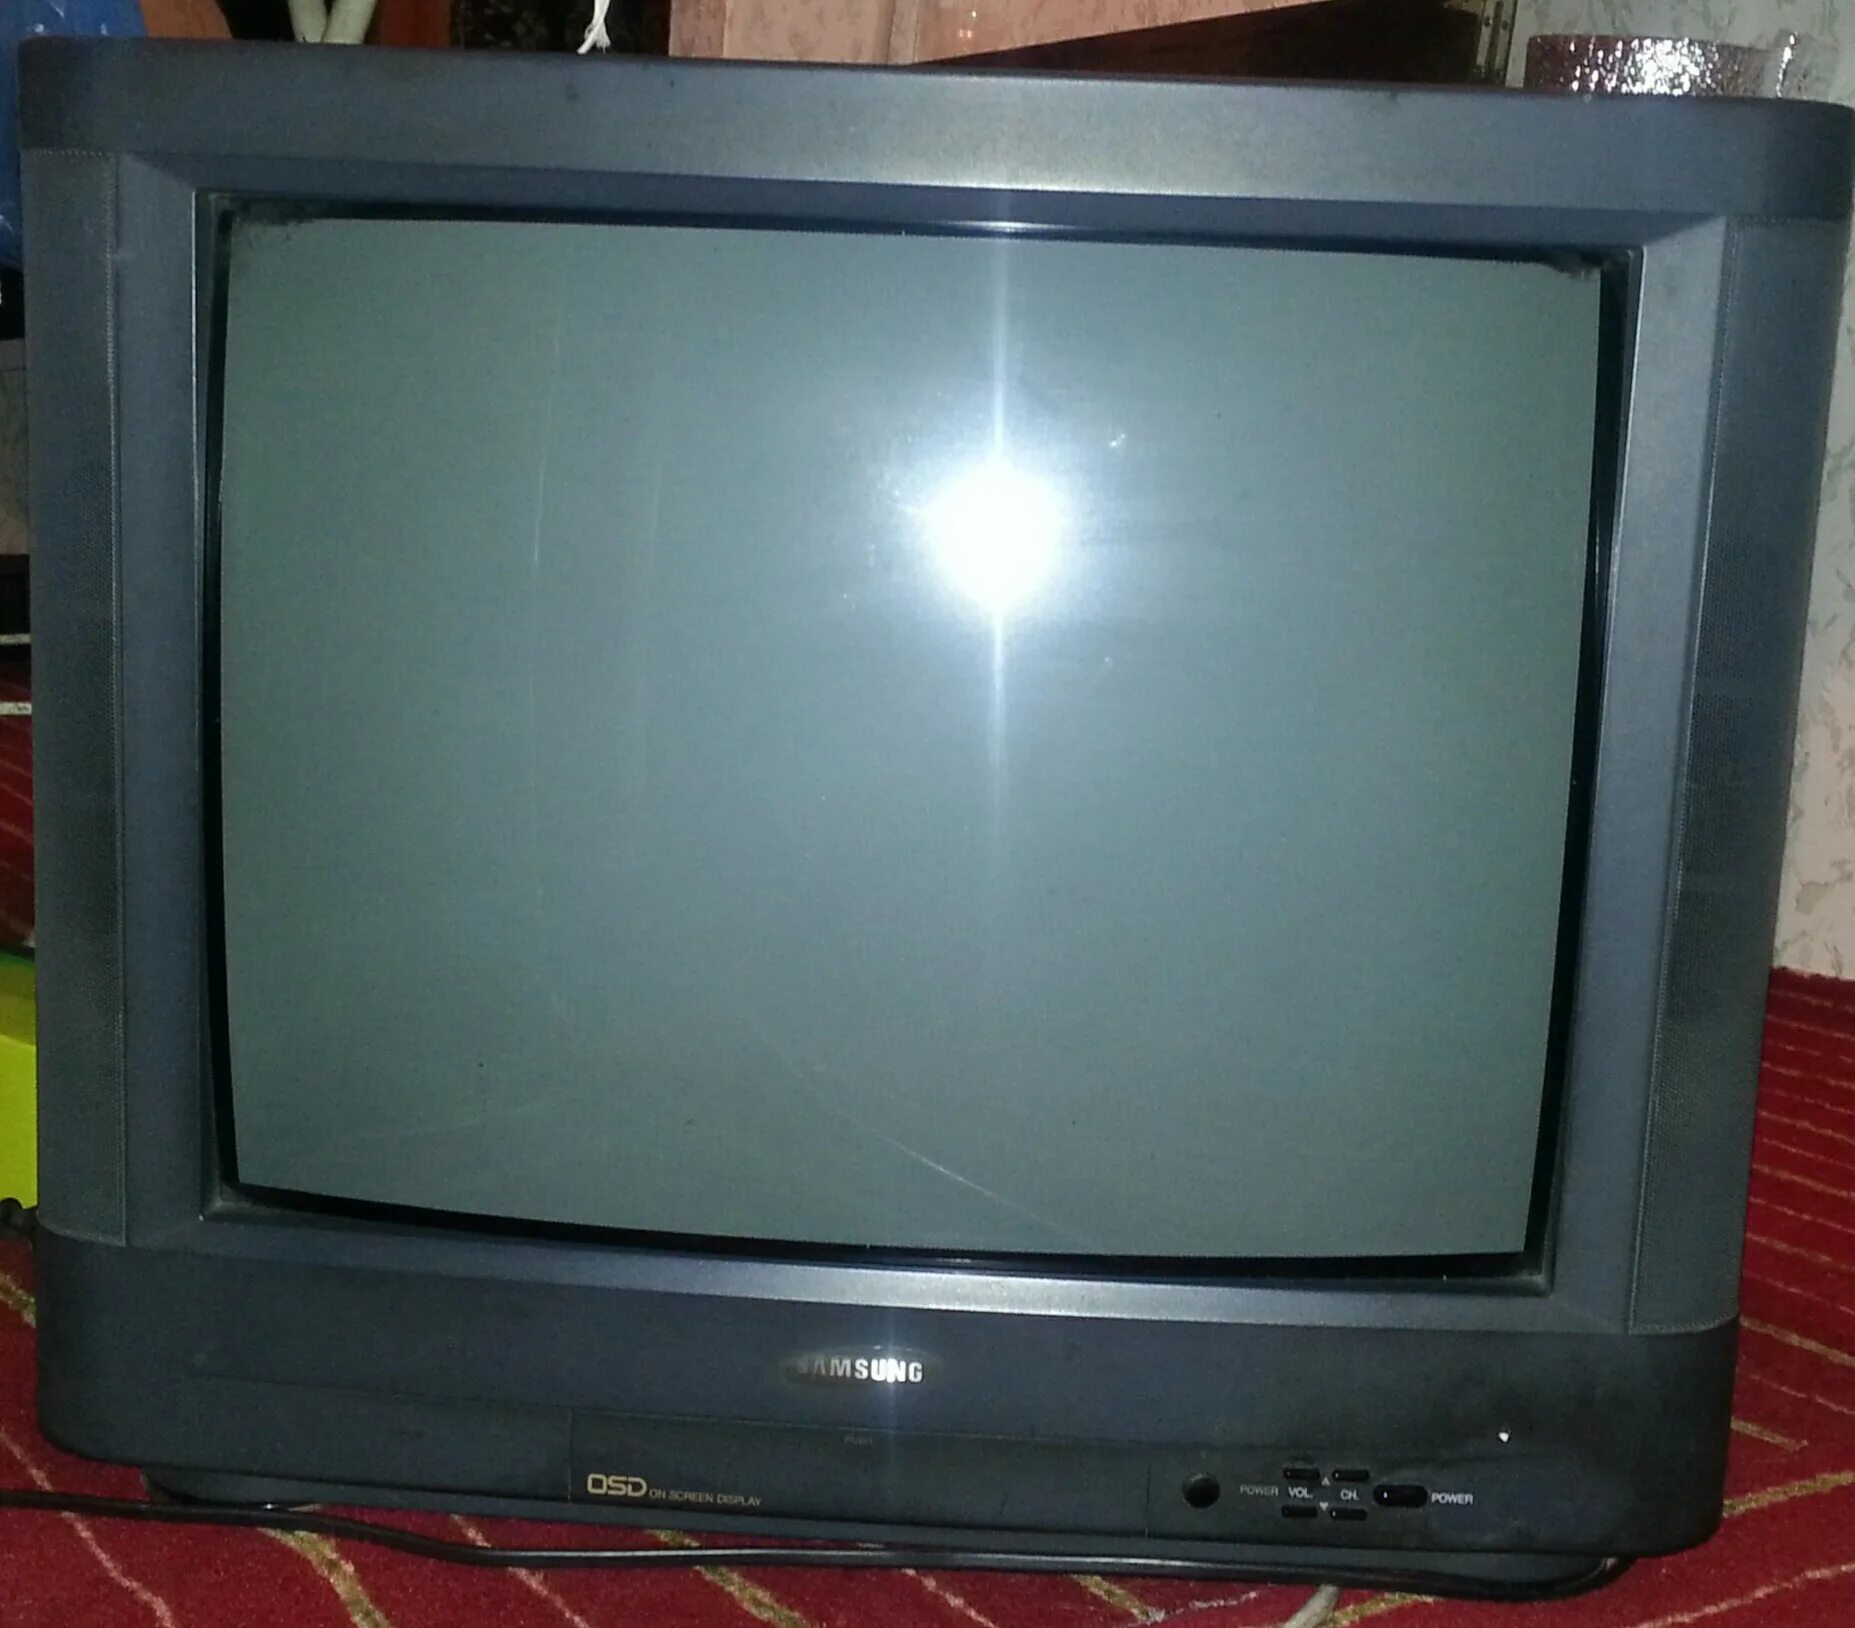 Куплю дешевый телевизор бу. Телевизор Волхов б. Телевизор б б к,. Телевизор Волхов старый с переключающим. Телевизор Волхов старый 60-х.